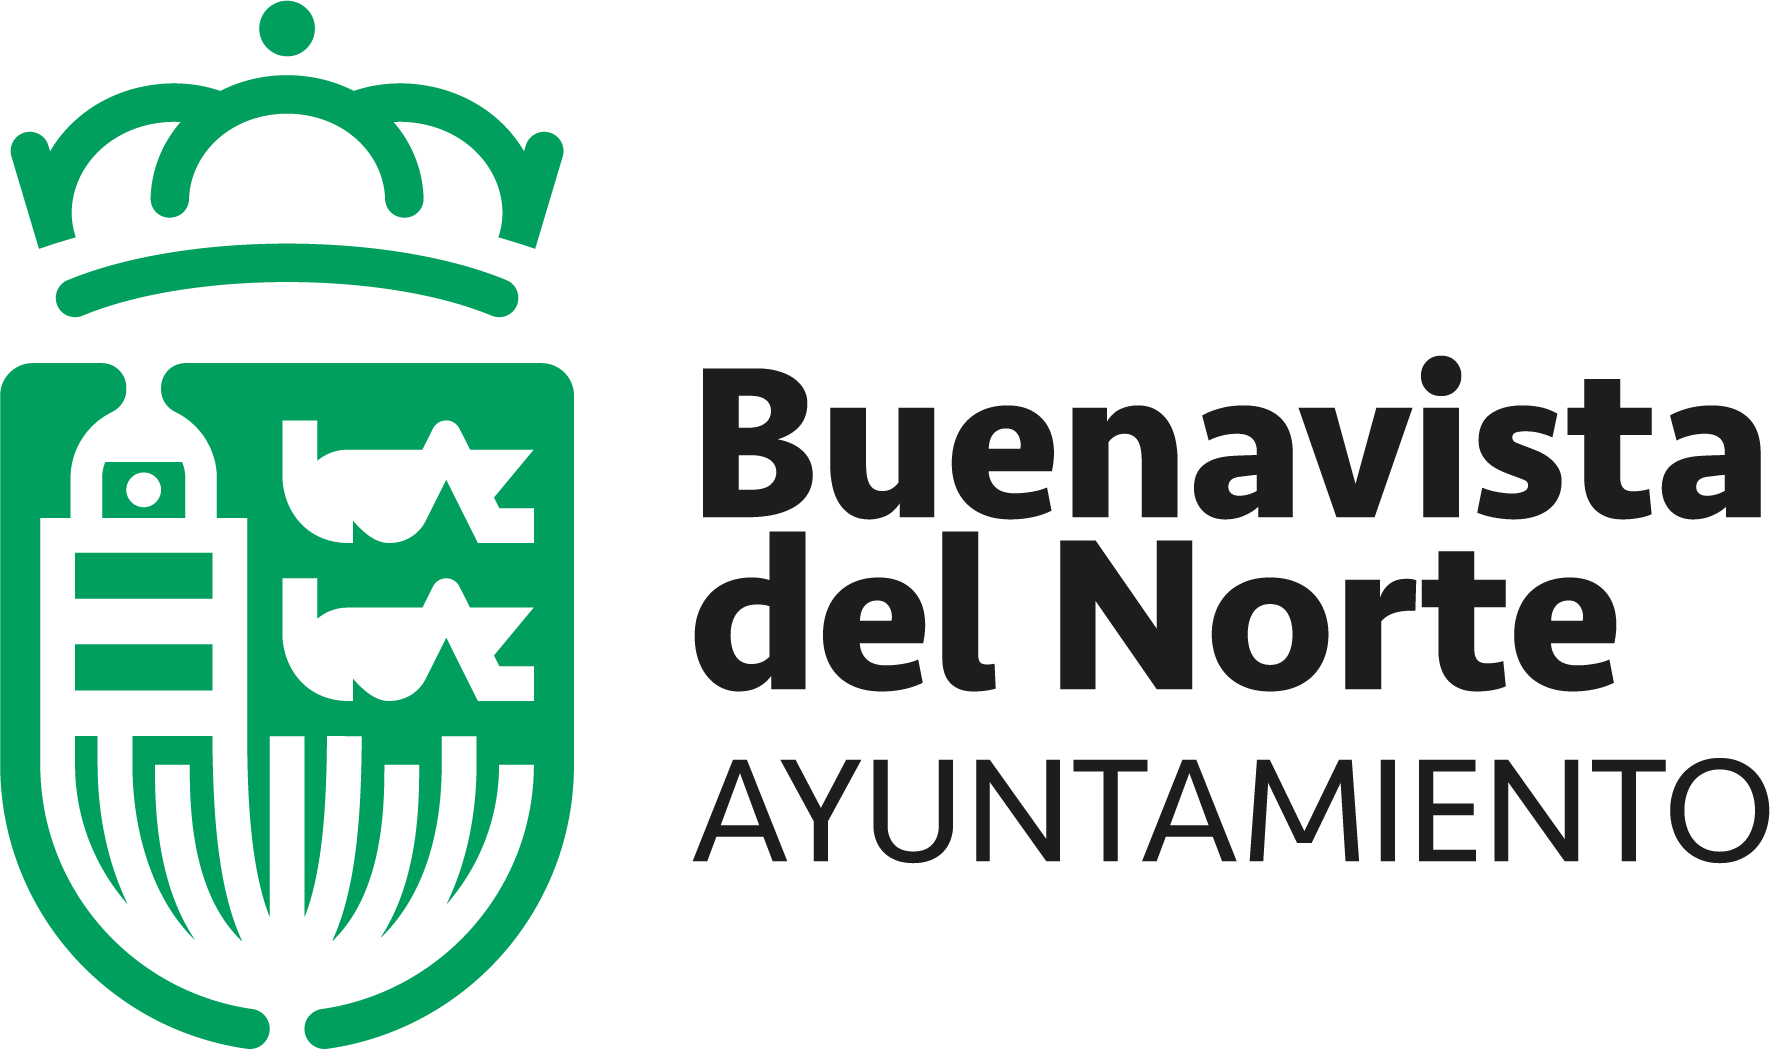 Ayuntamiento de Buenavista del Norte.